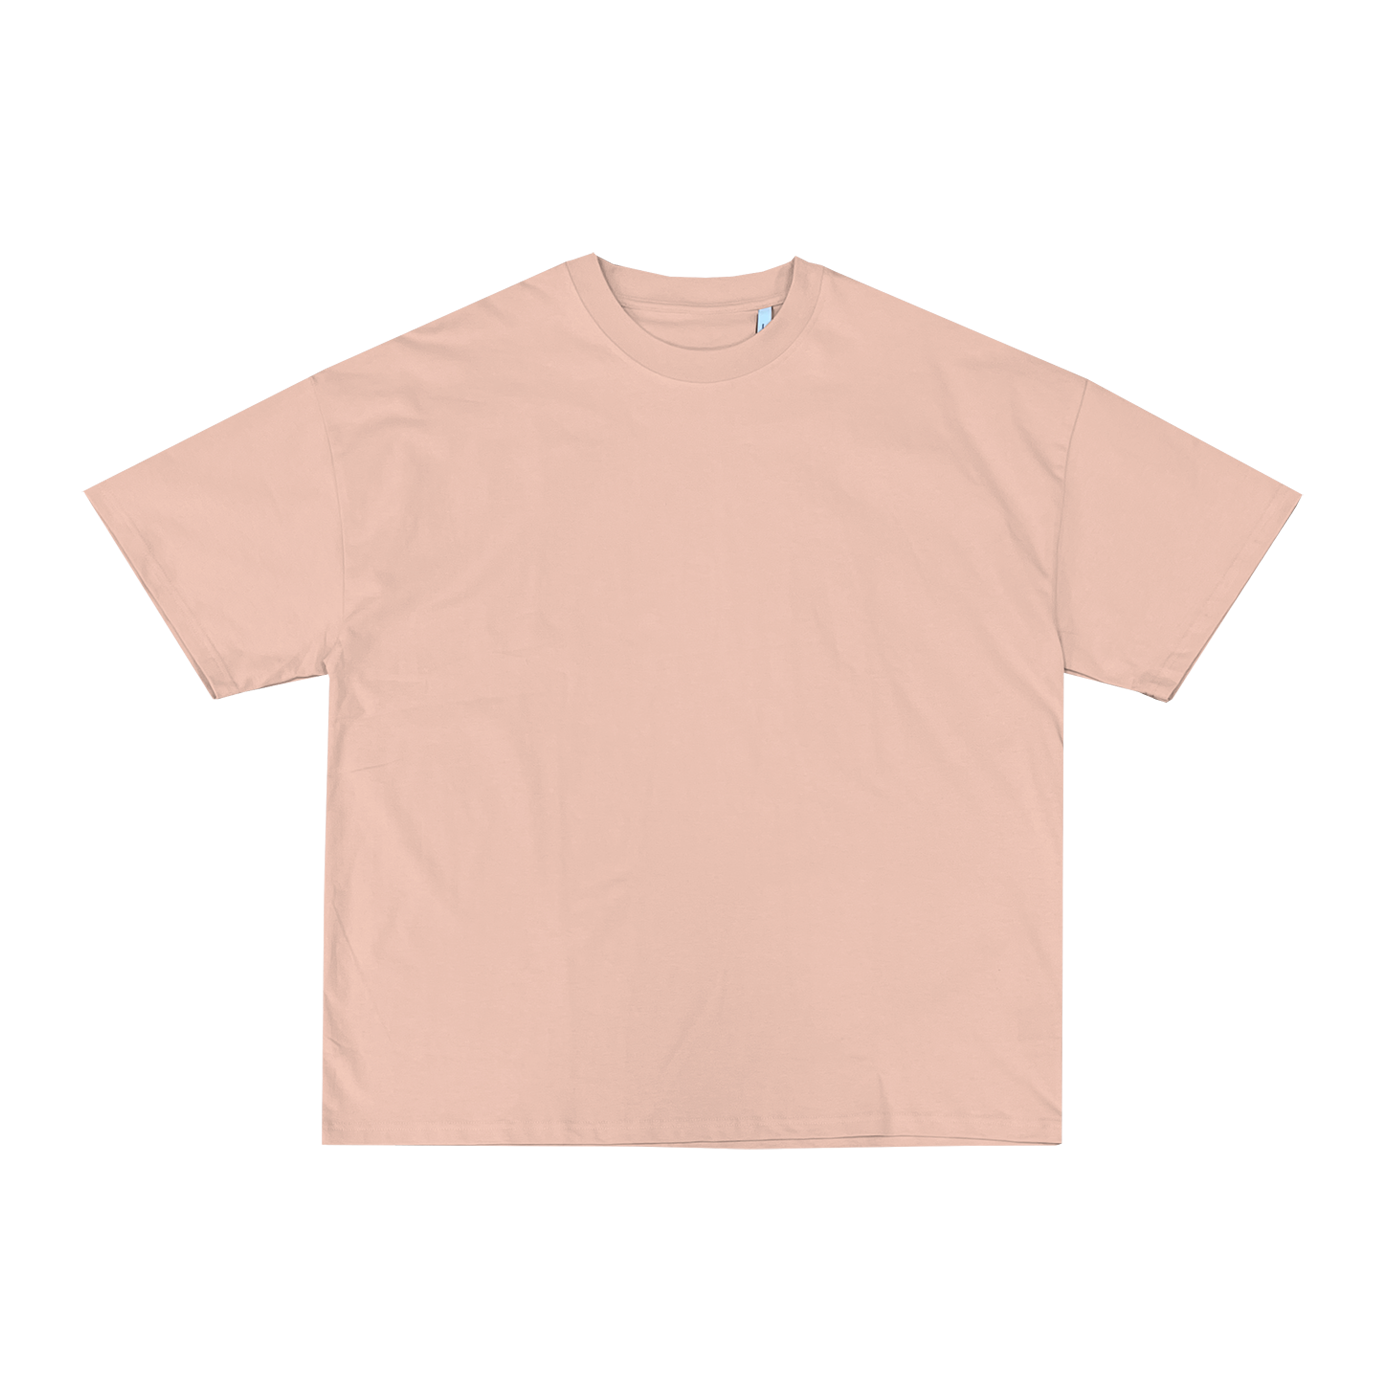 "T-shirt rose pâle à coupe décontractée en coton, idéal pour la personnalisation sur prynt.shop."